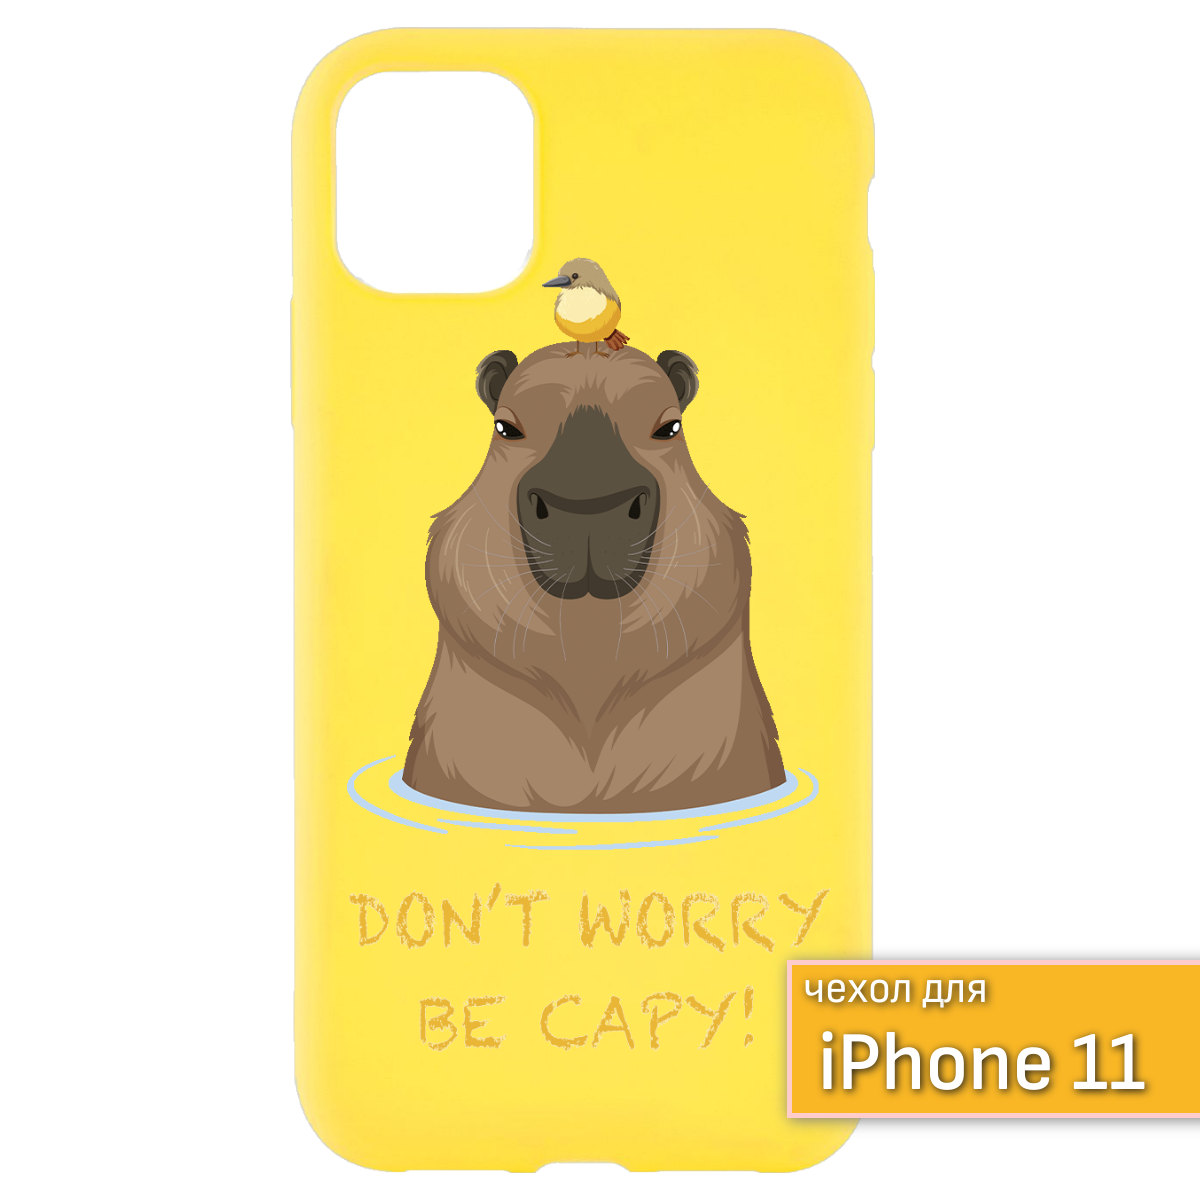 Защитный чехол на iPhone 11 Капибара/айфон 11 чехол Capybar/Капибара чехол айфон 11, чехол желтый